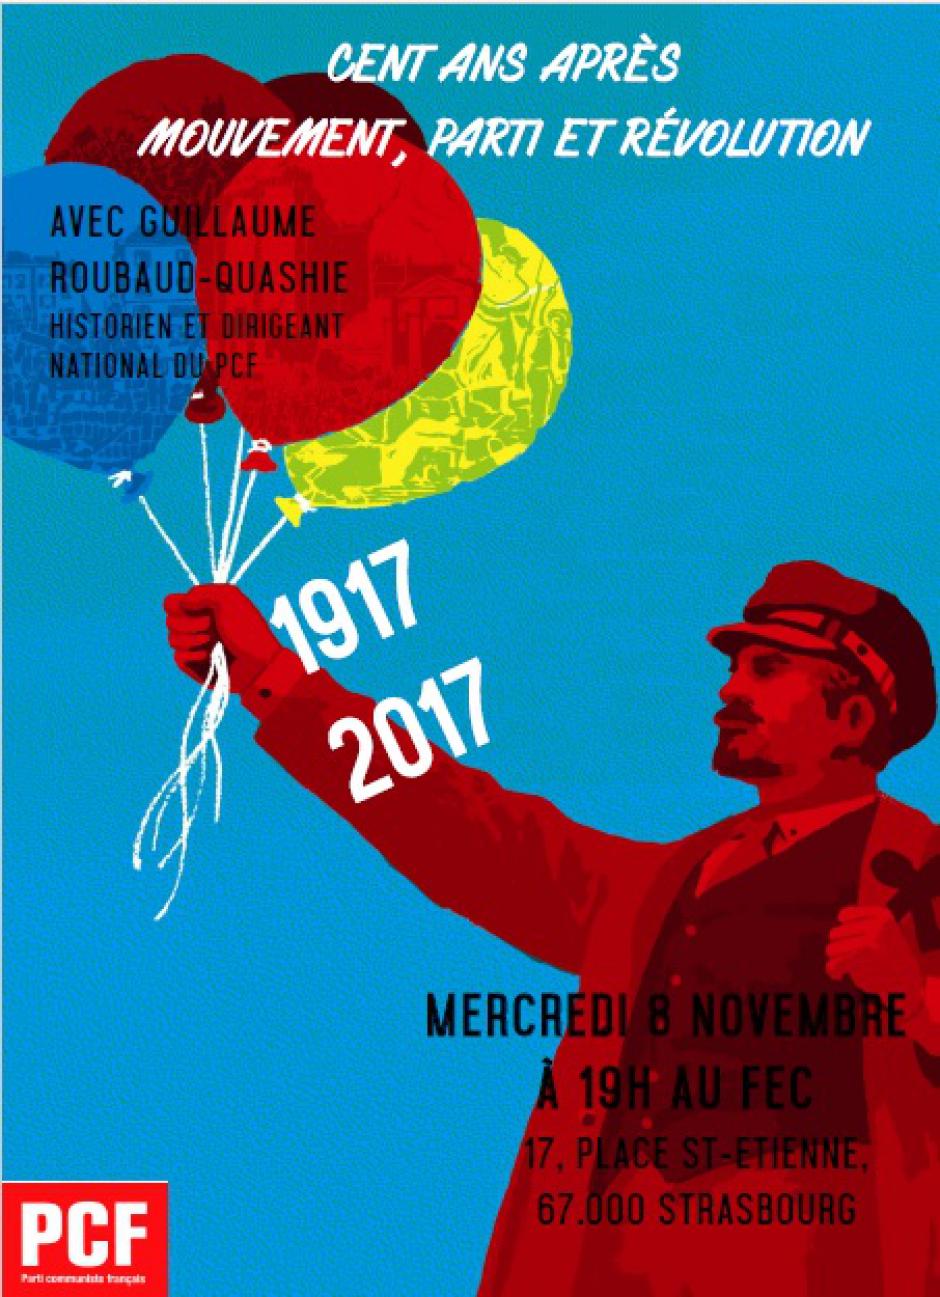 CENT ANS APRÈS 1917, MOUVEMENT, PARTI ET RÉVOLUTION